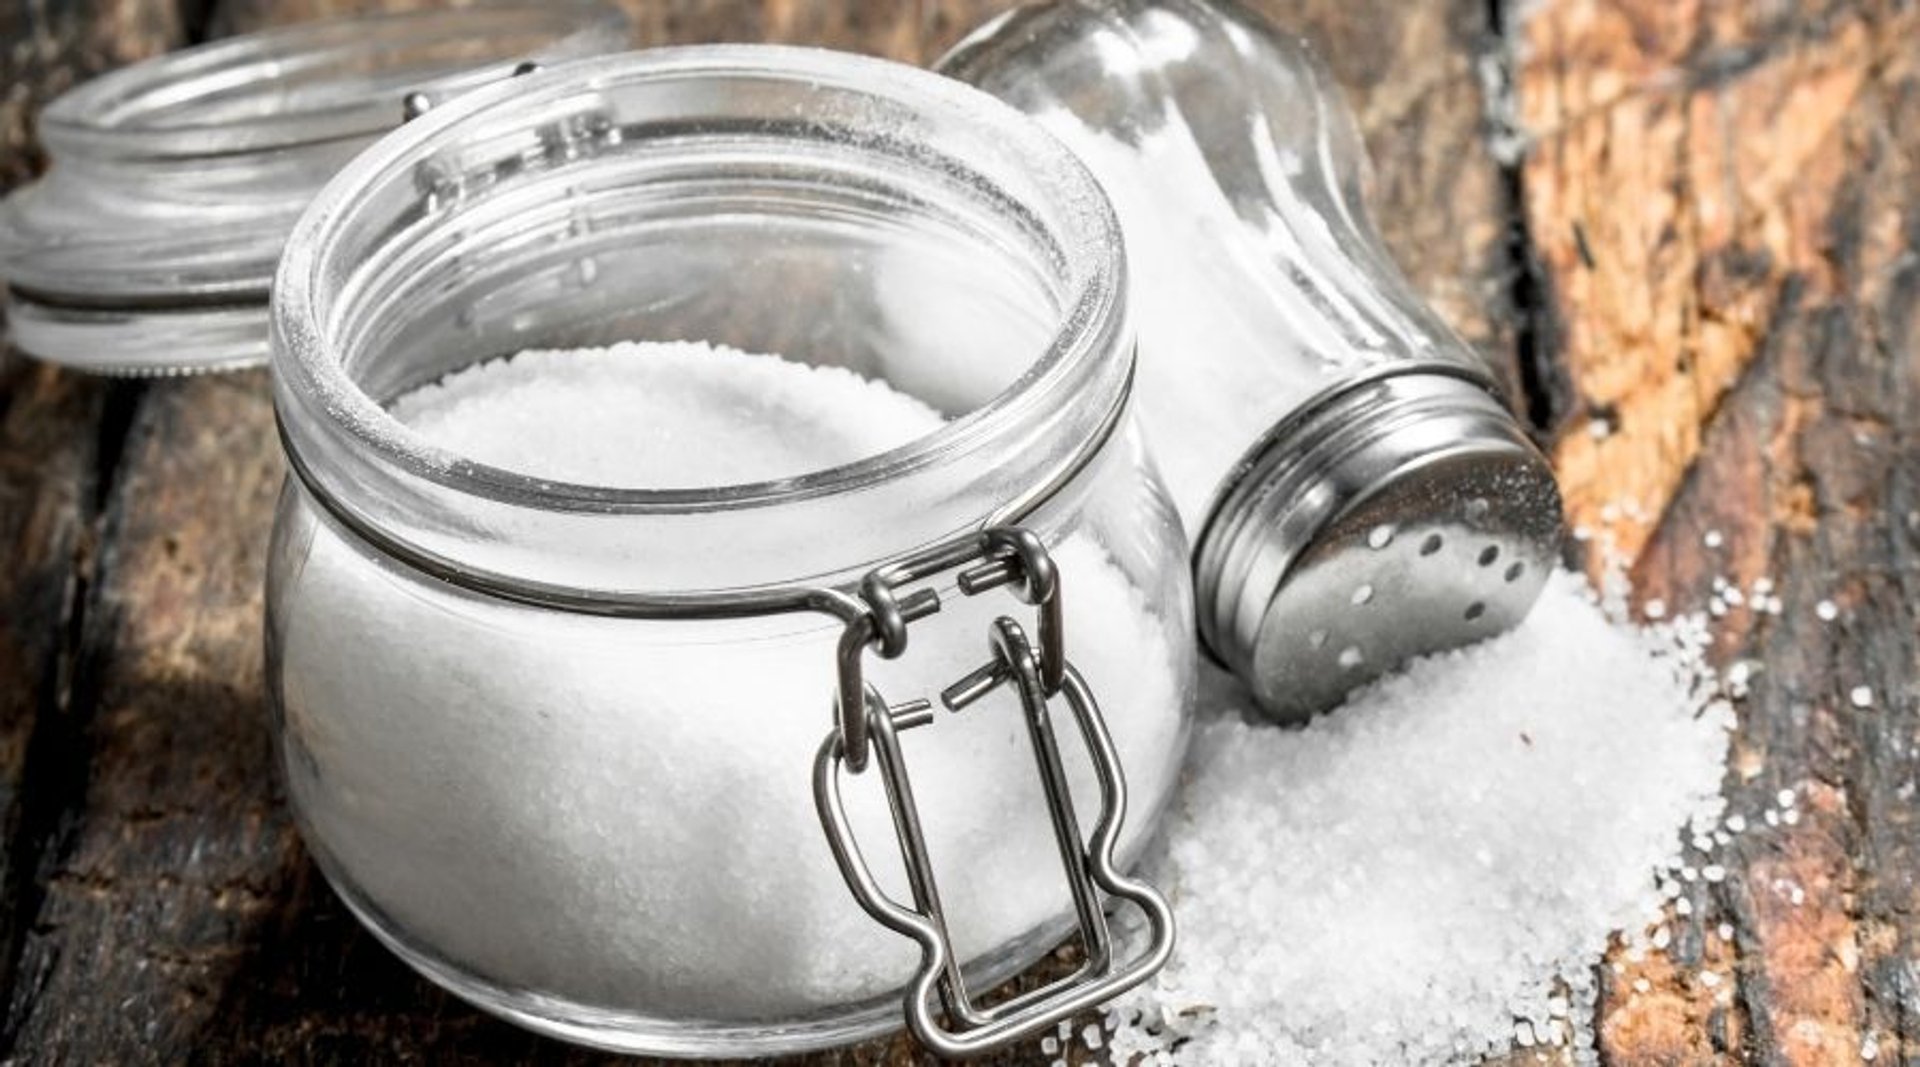 Jaki jest najlepszy sposób przechowywania soli? Kluczowy jest 1 krok